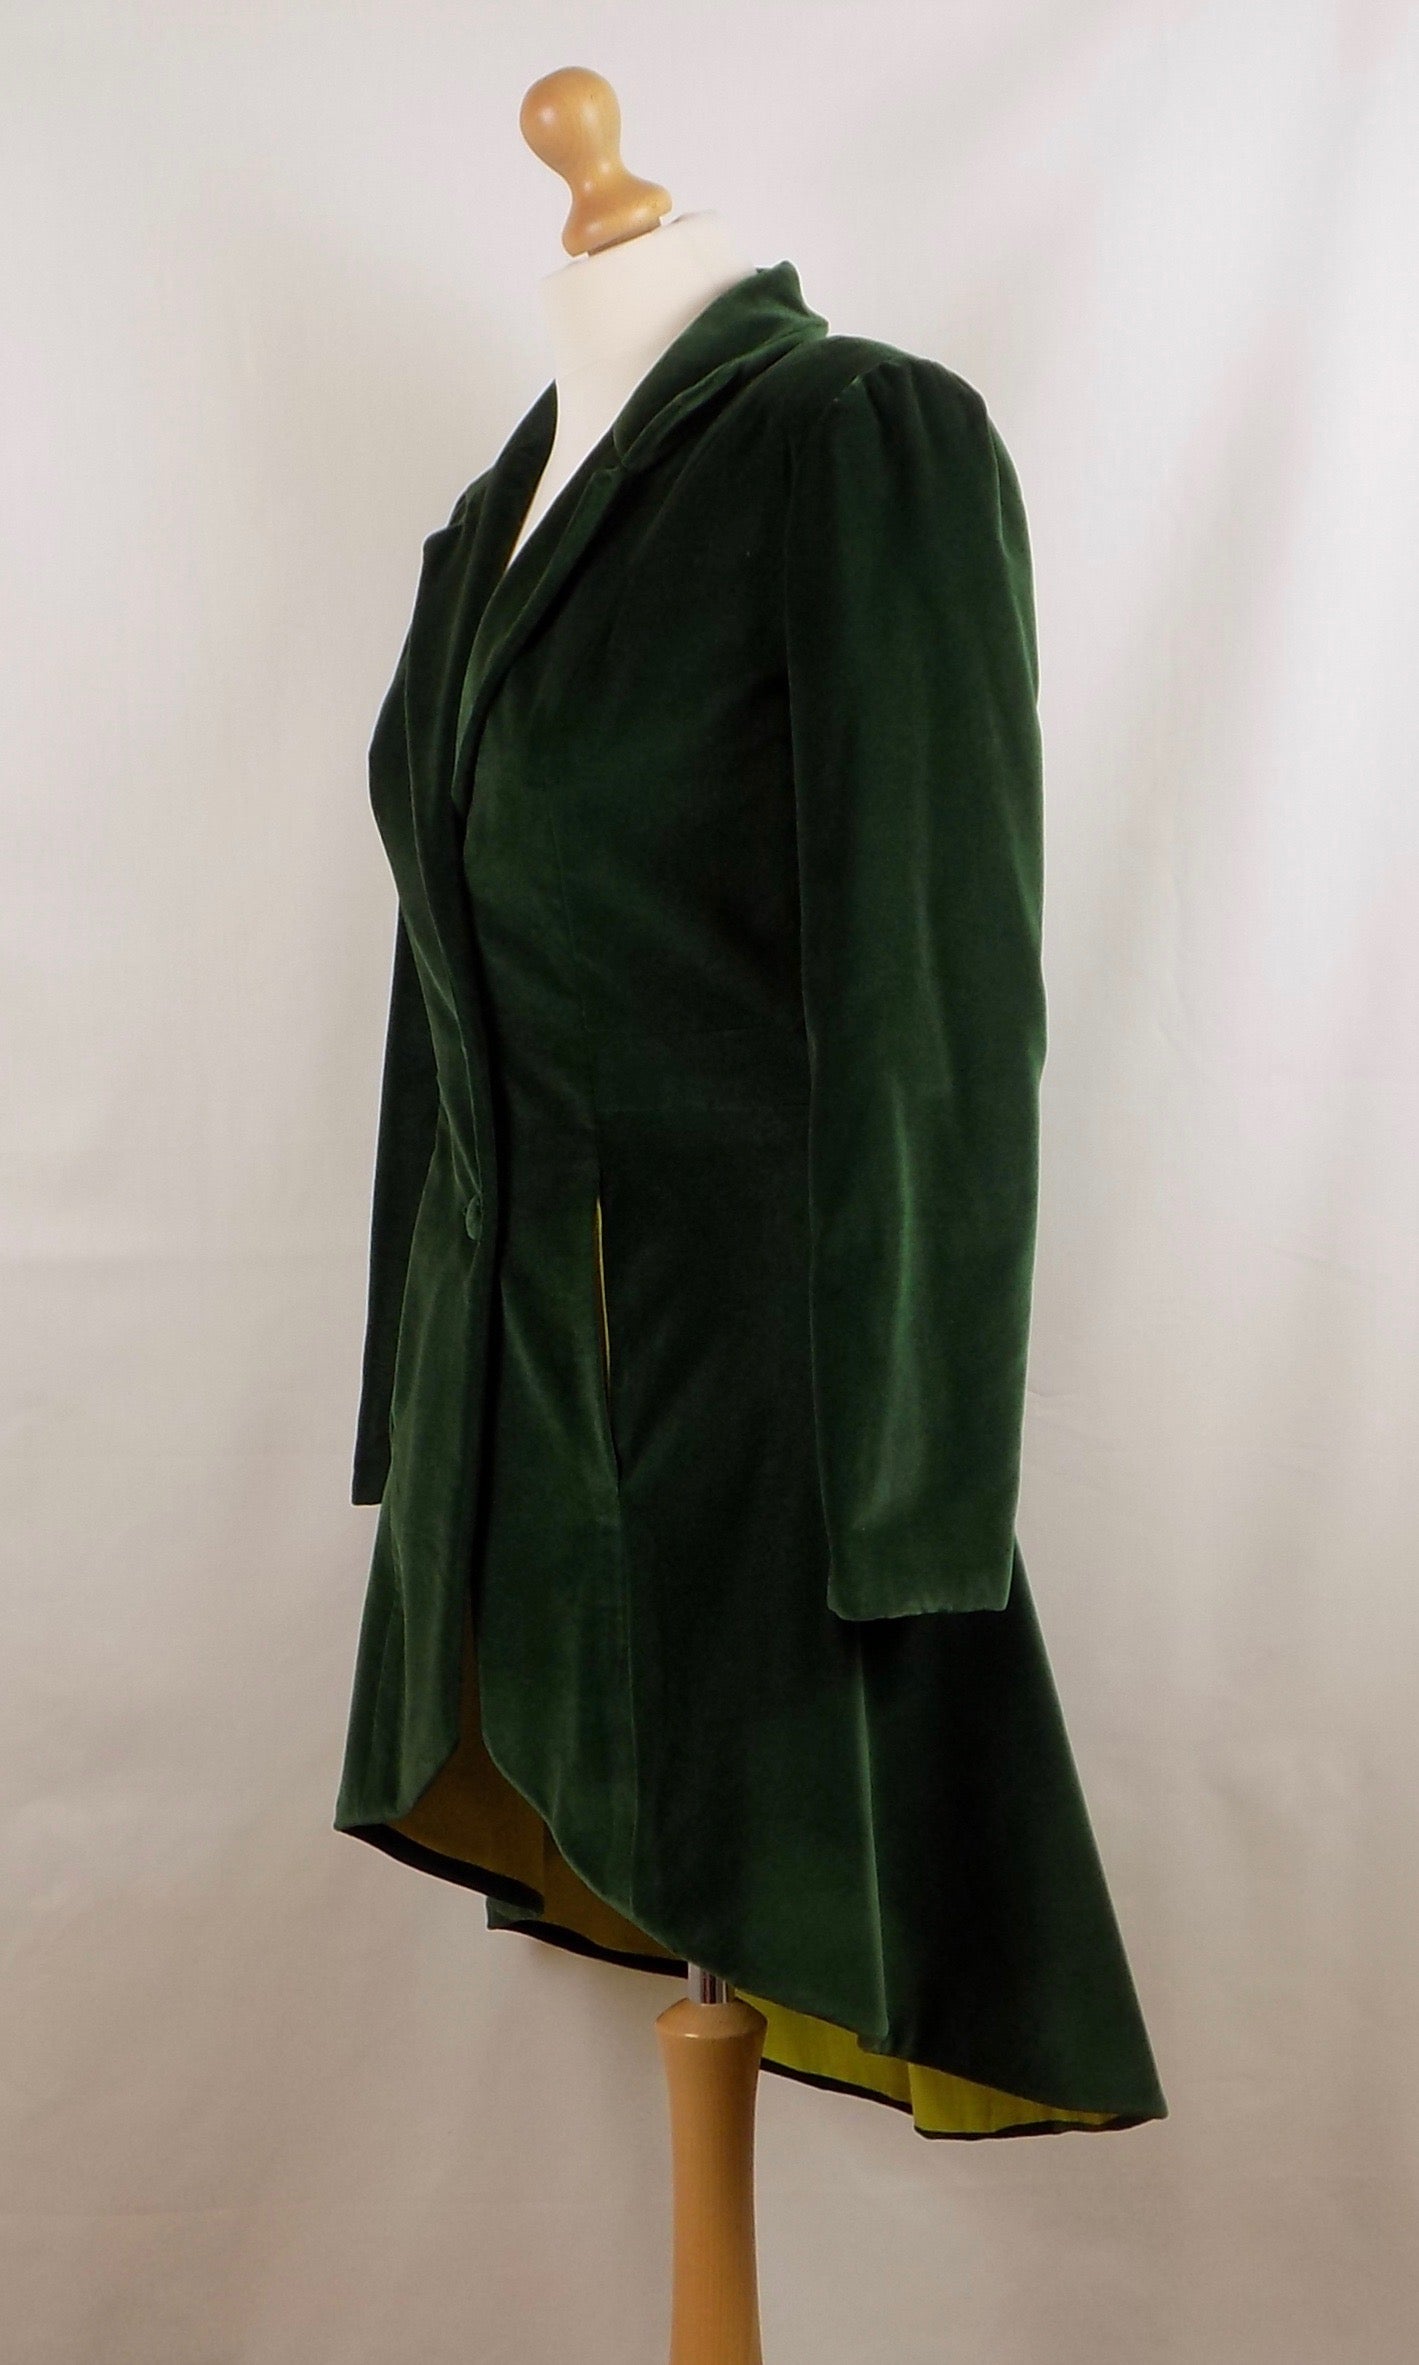 Tailored Velvet Jacket, Size 34